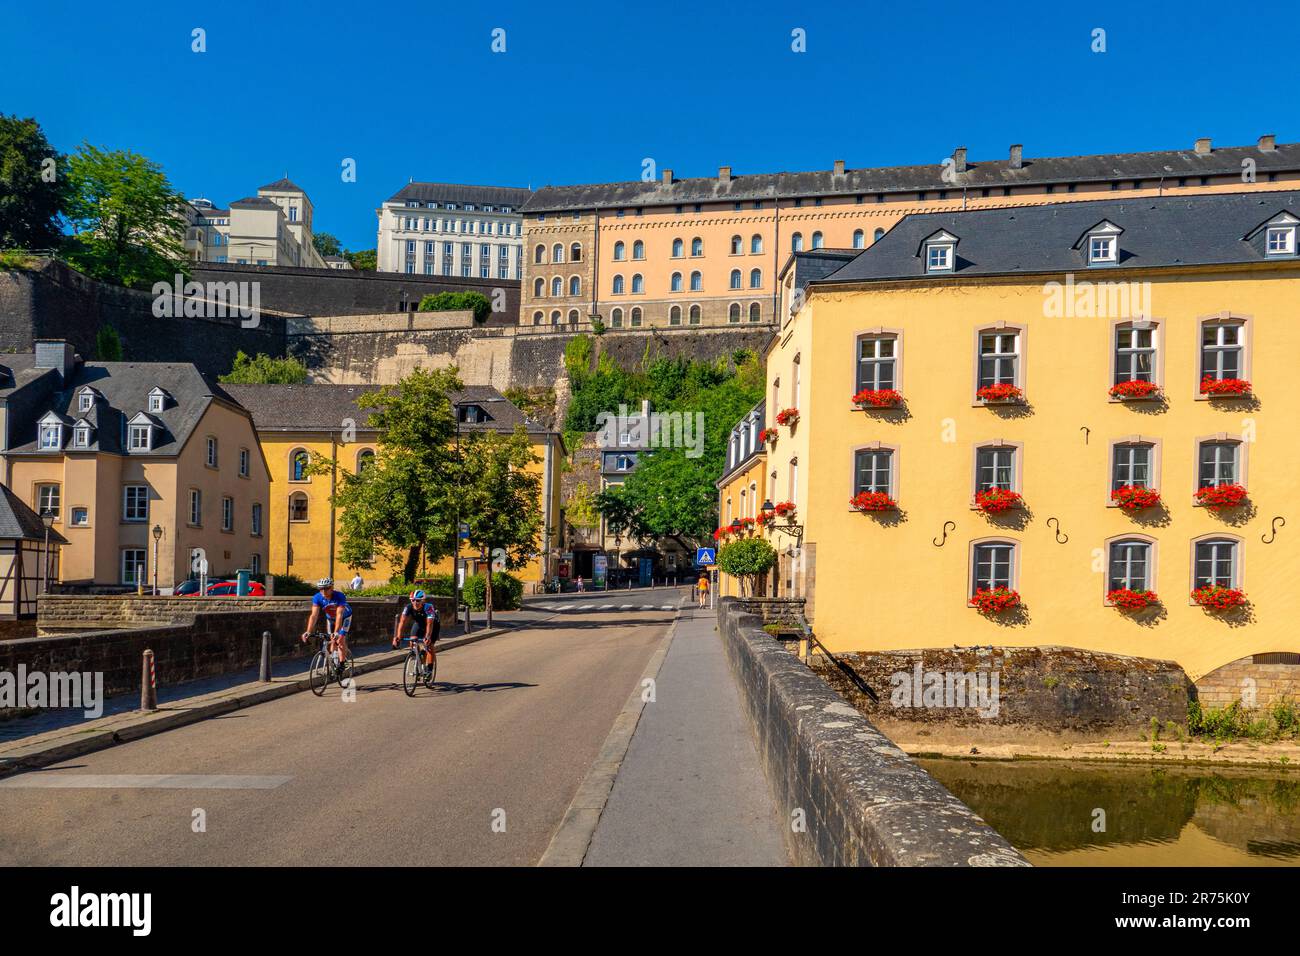 Pont d'Alzette dans le quartier de Grund avec la haute-ville, la ville de Luxembourg, le Benelux, les pays du Benelux, le Luxembourg Banque D'Images